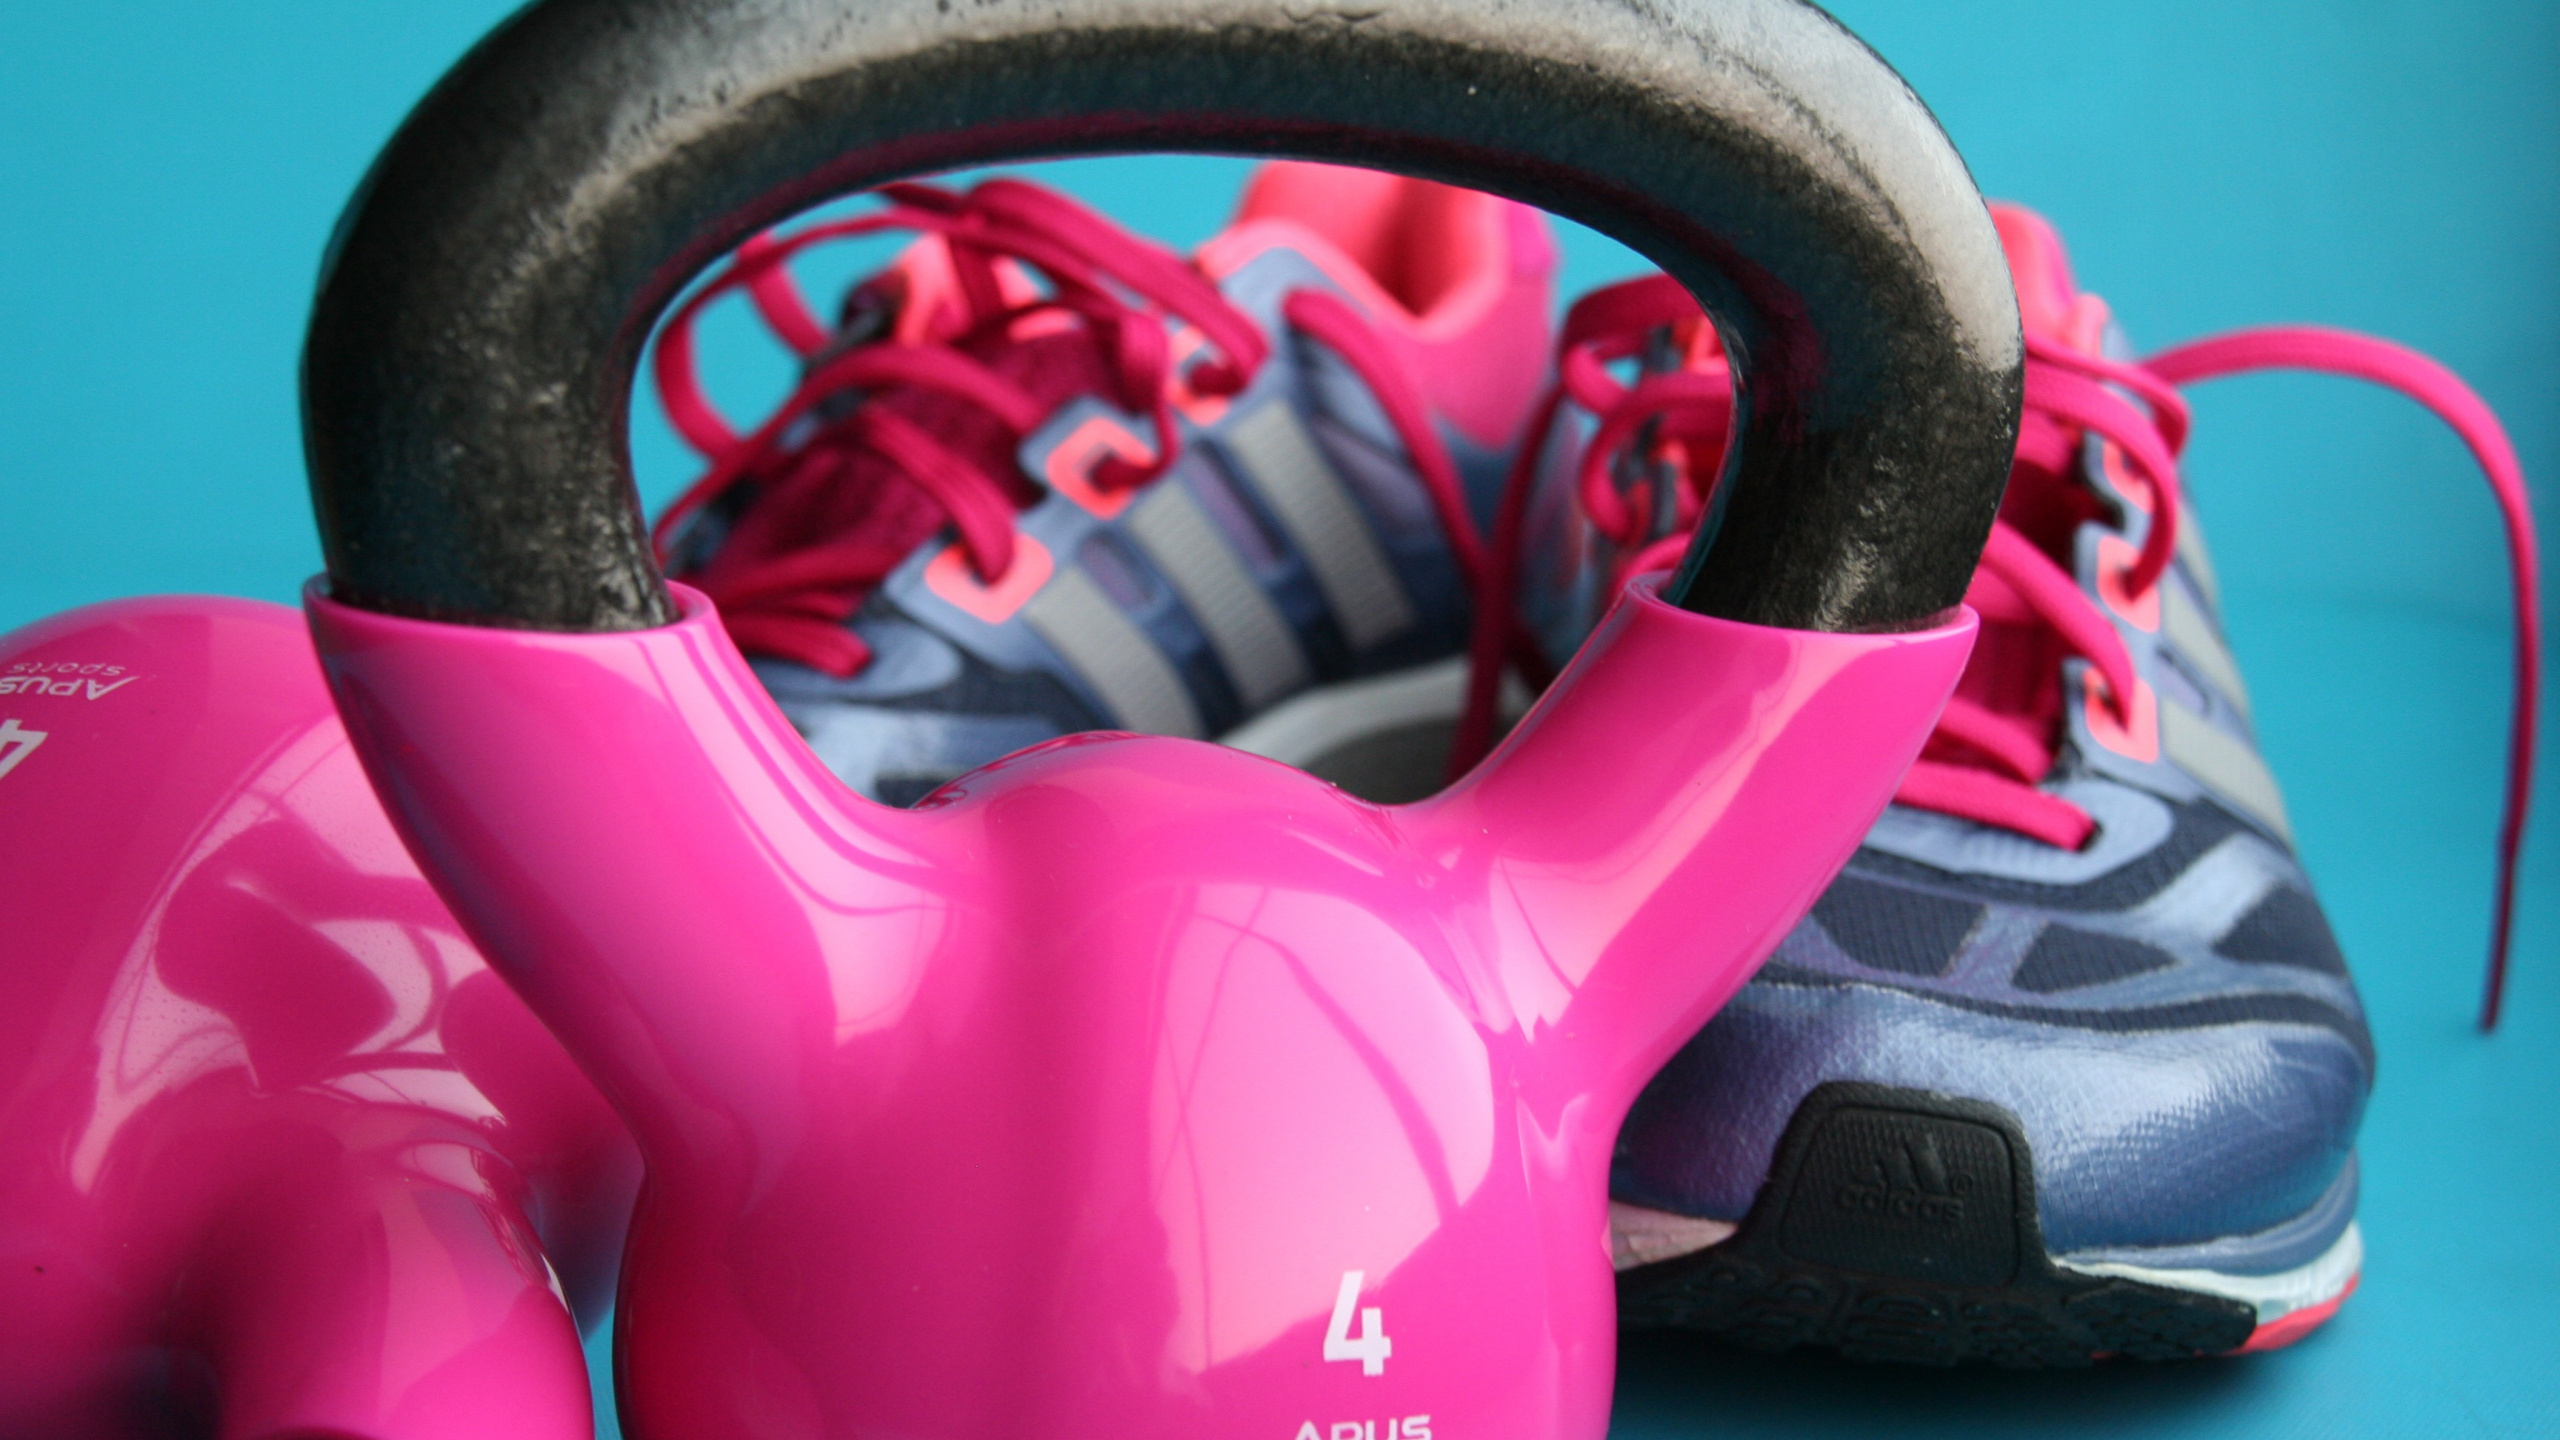 健身中心, 身体健康, 锻炼, 重量训练, 粉红色 壁纸 2560x1440 允许